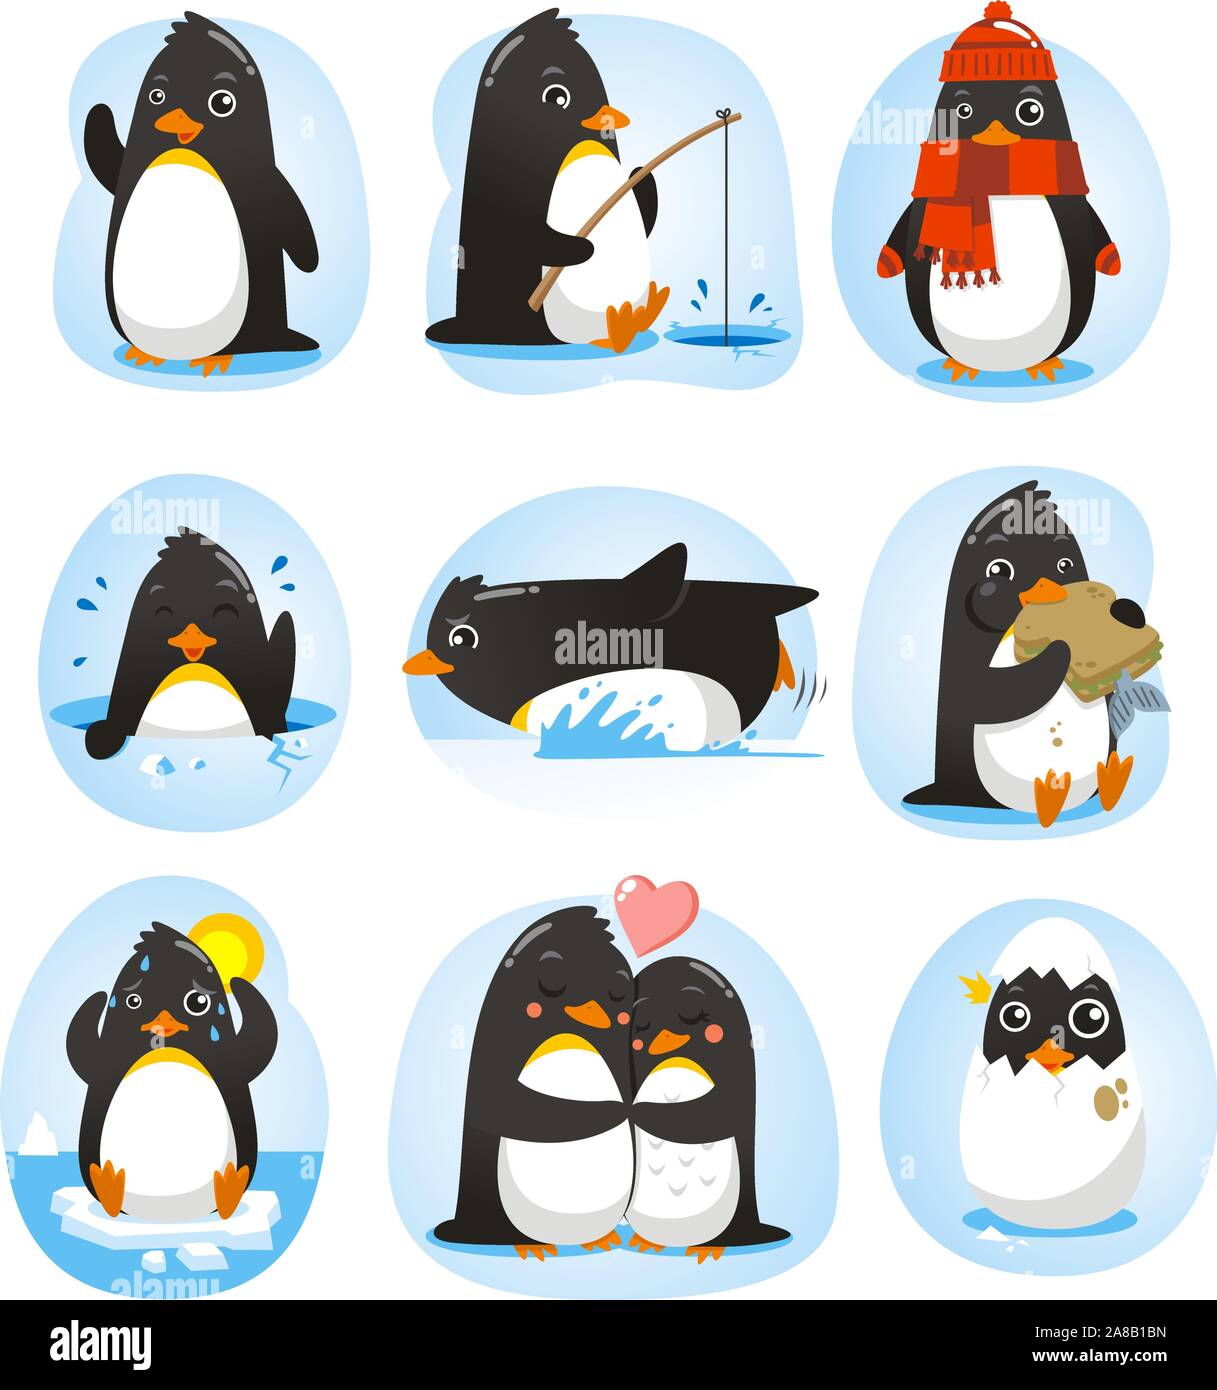 Pinguin set Vektor-Illustration mit den Pinguinen in verschiedenen Situationen wie tanzen, Angeln, Winter, Schwimmen, Essen, in Love Kollektion. Stock Vektor